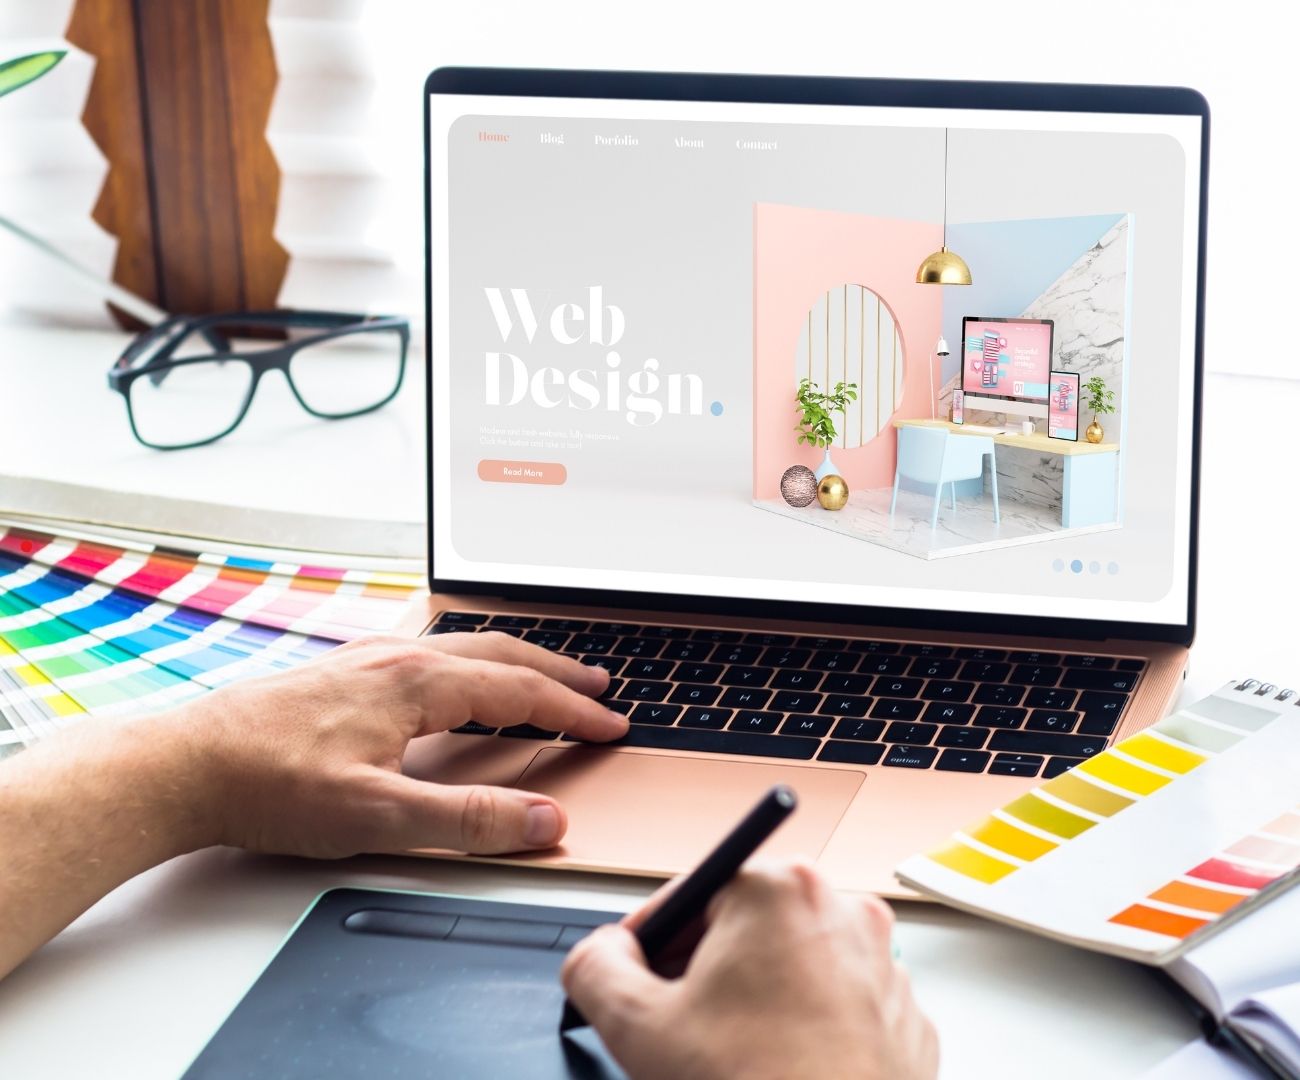 design web